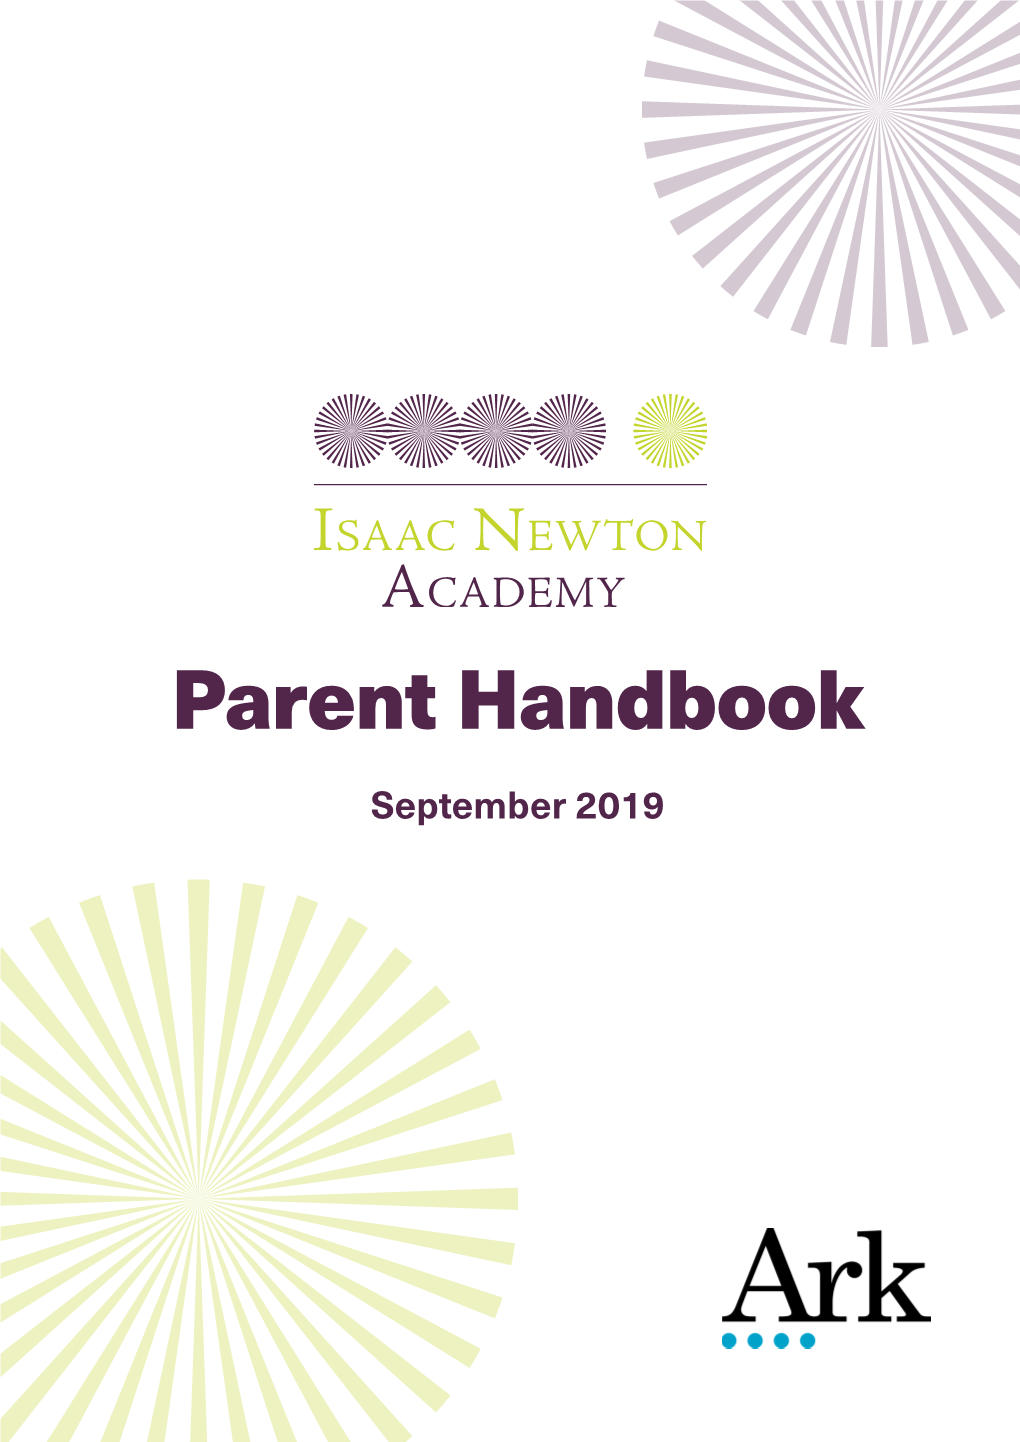 Parent Handbook September 2019 Contents